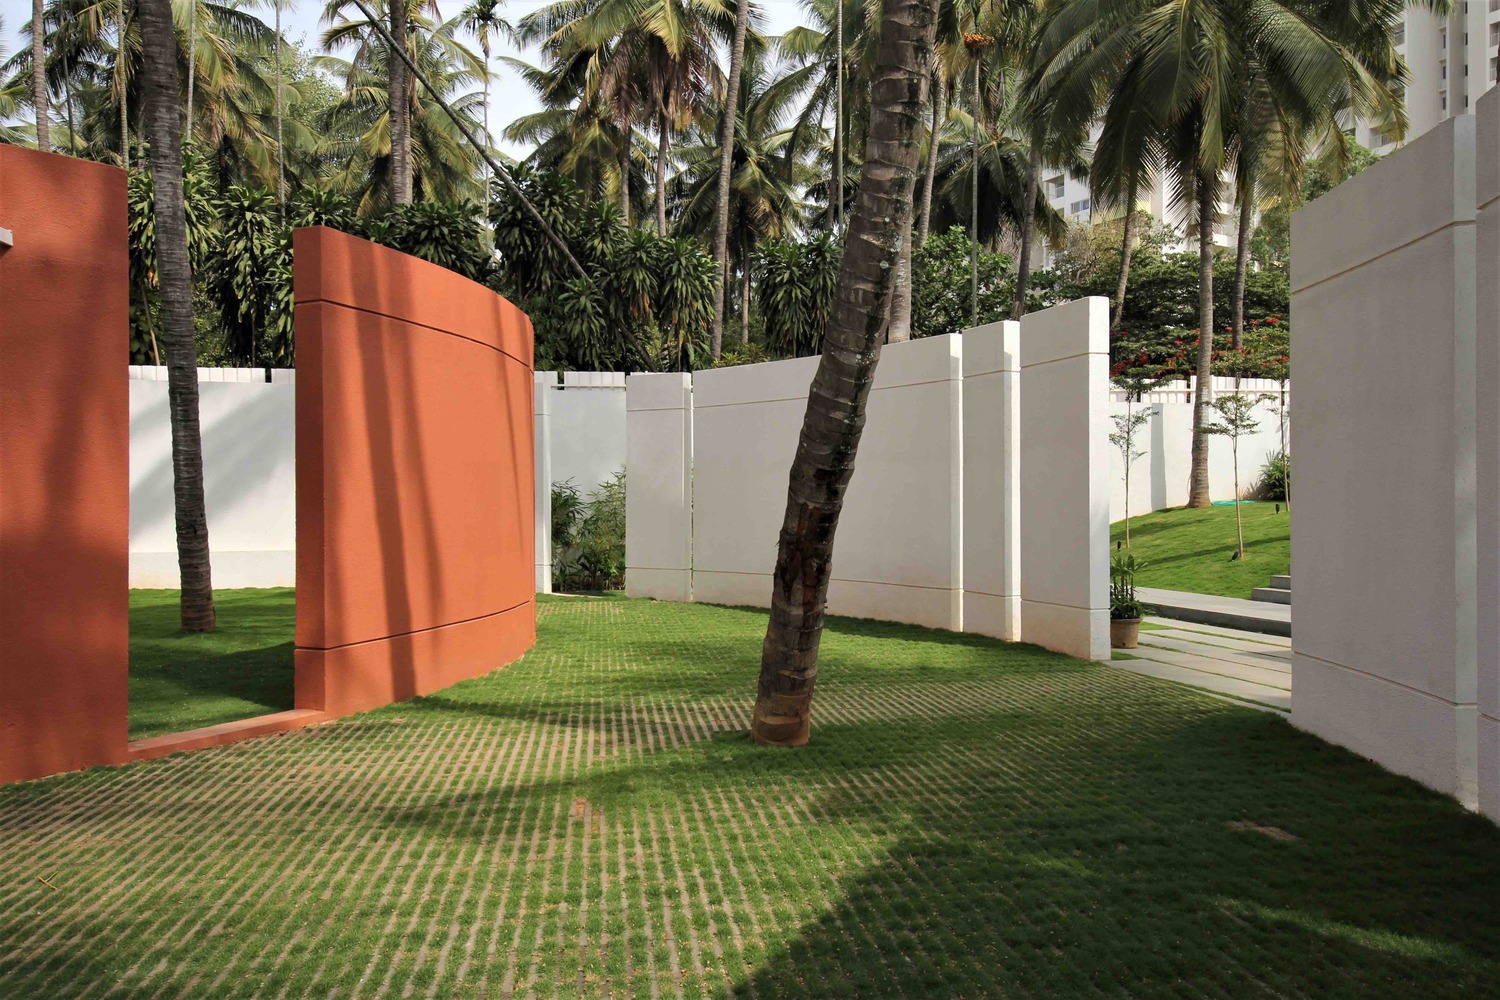 Rohan Akriti Collage Architecture Studio